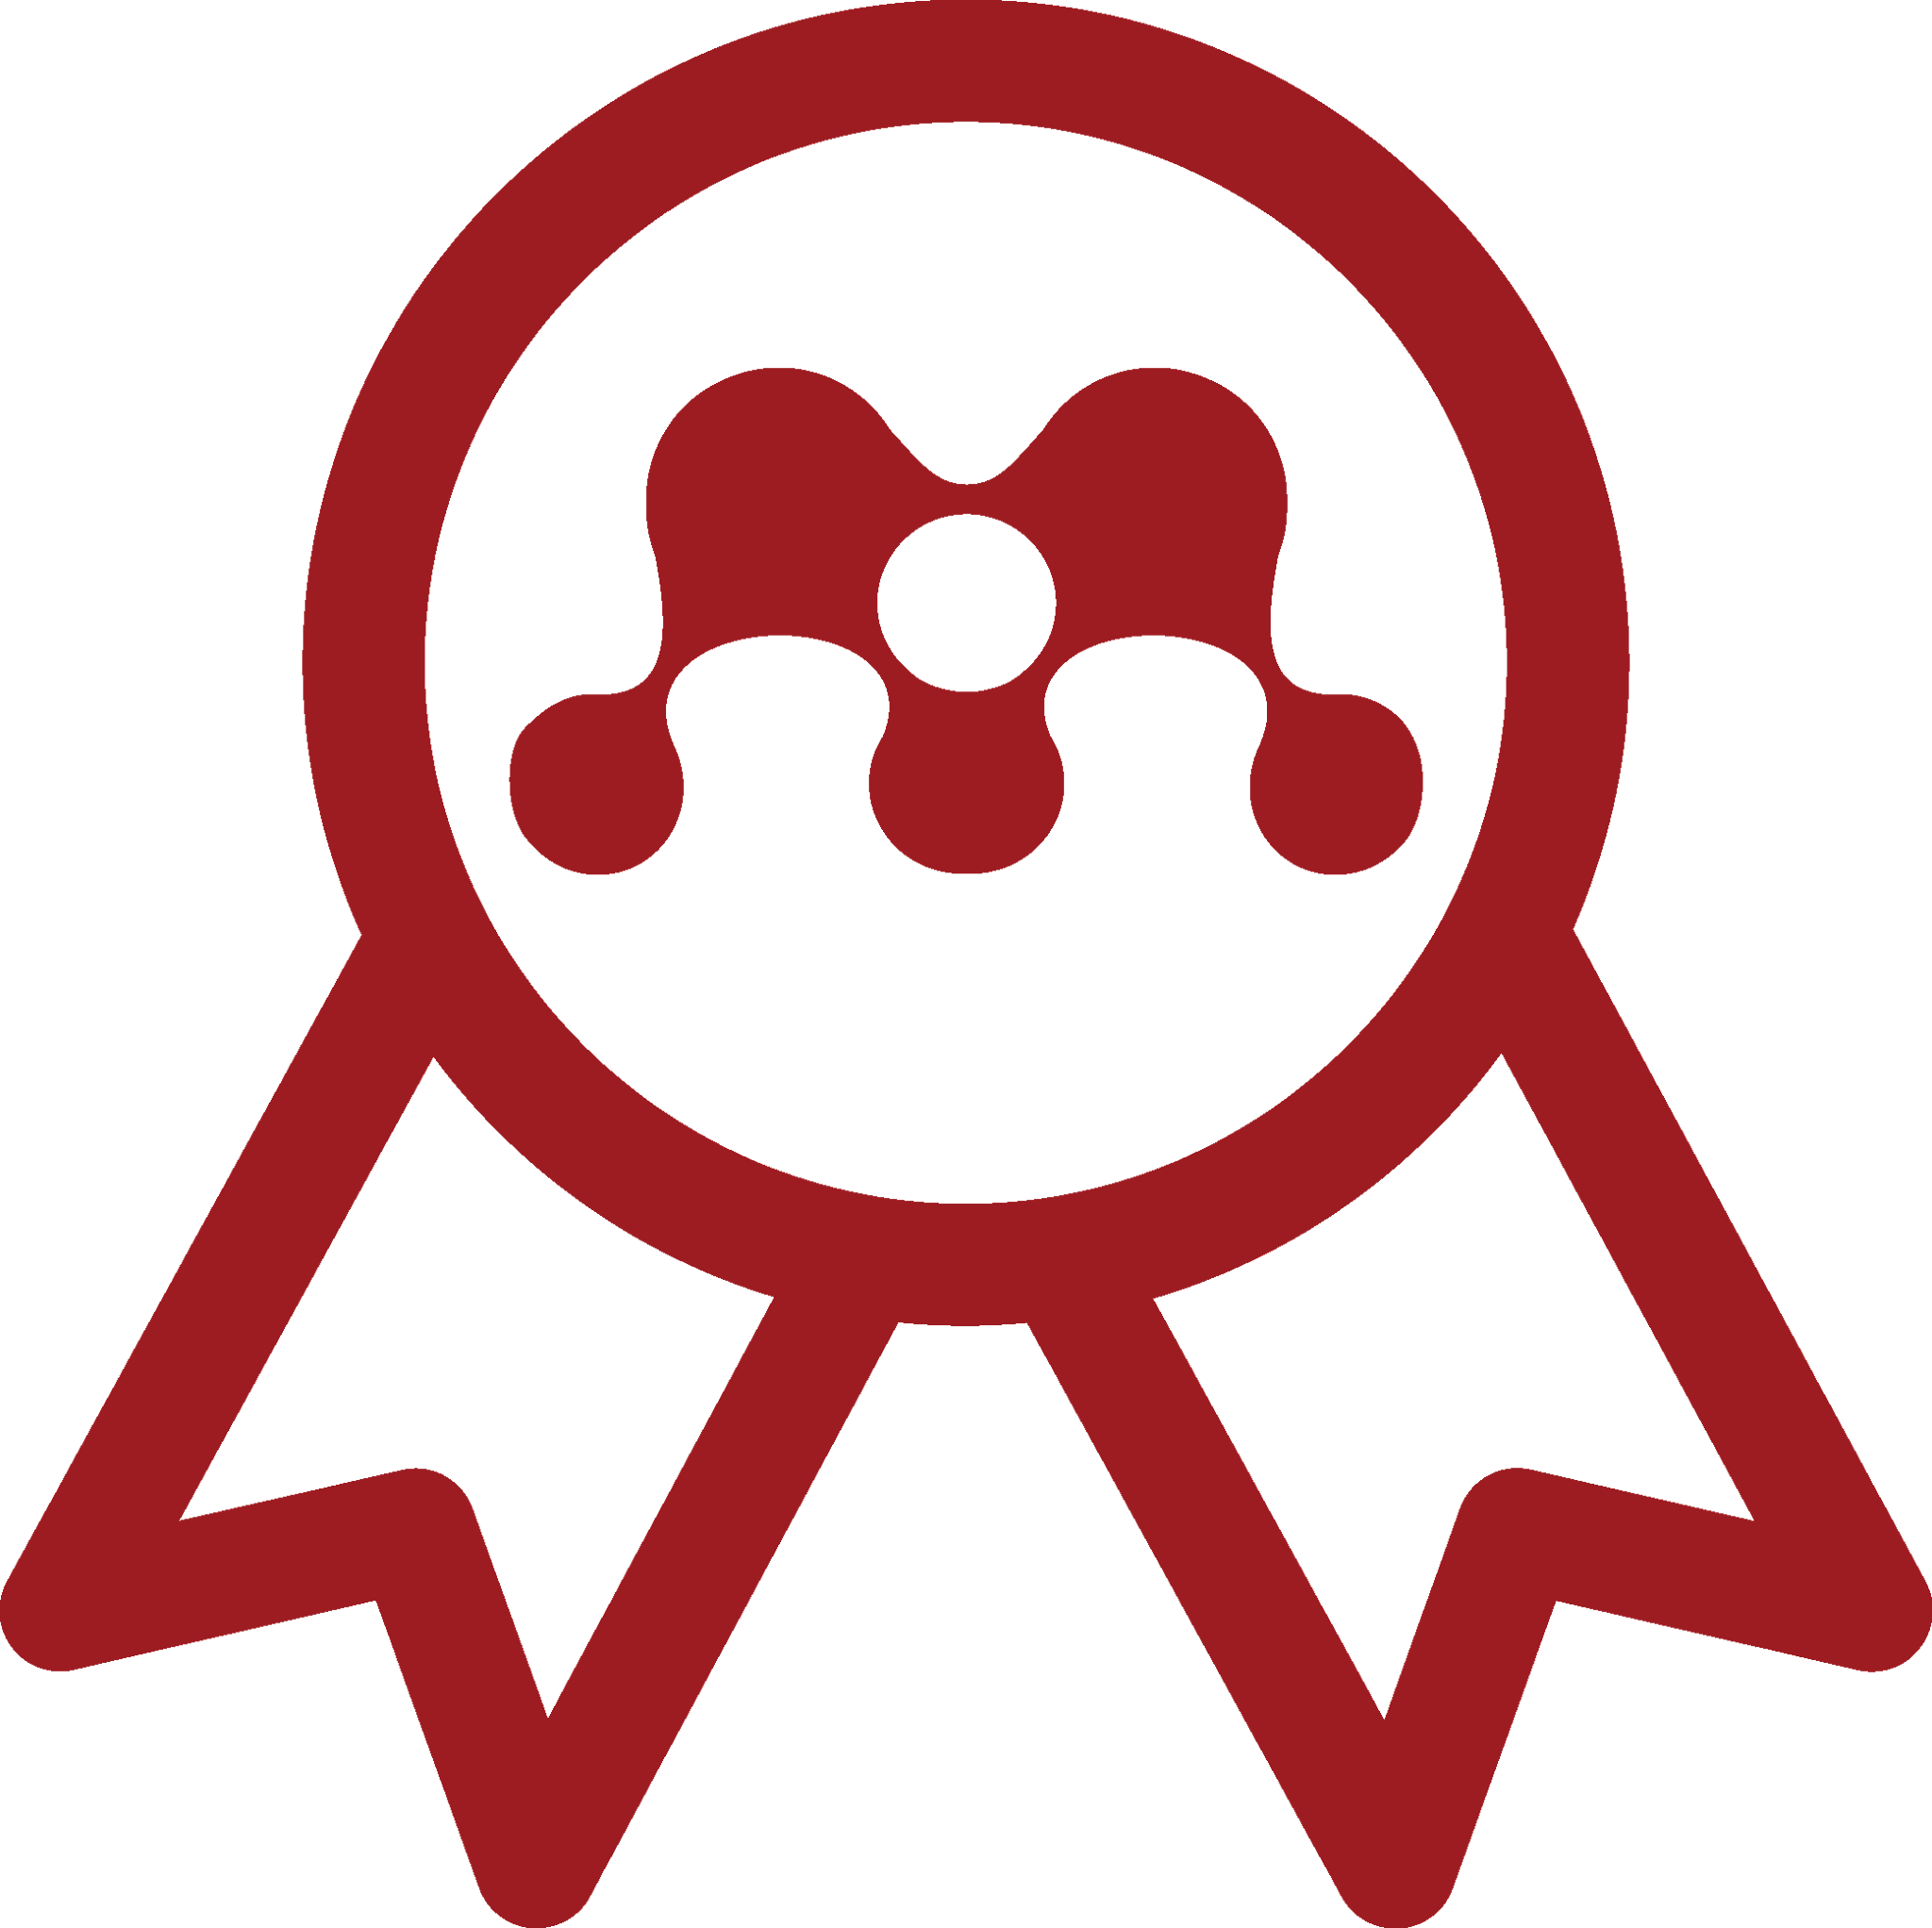 Library Certification Rosette - Mendeley Certification Program (2048x2044)